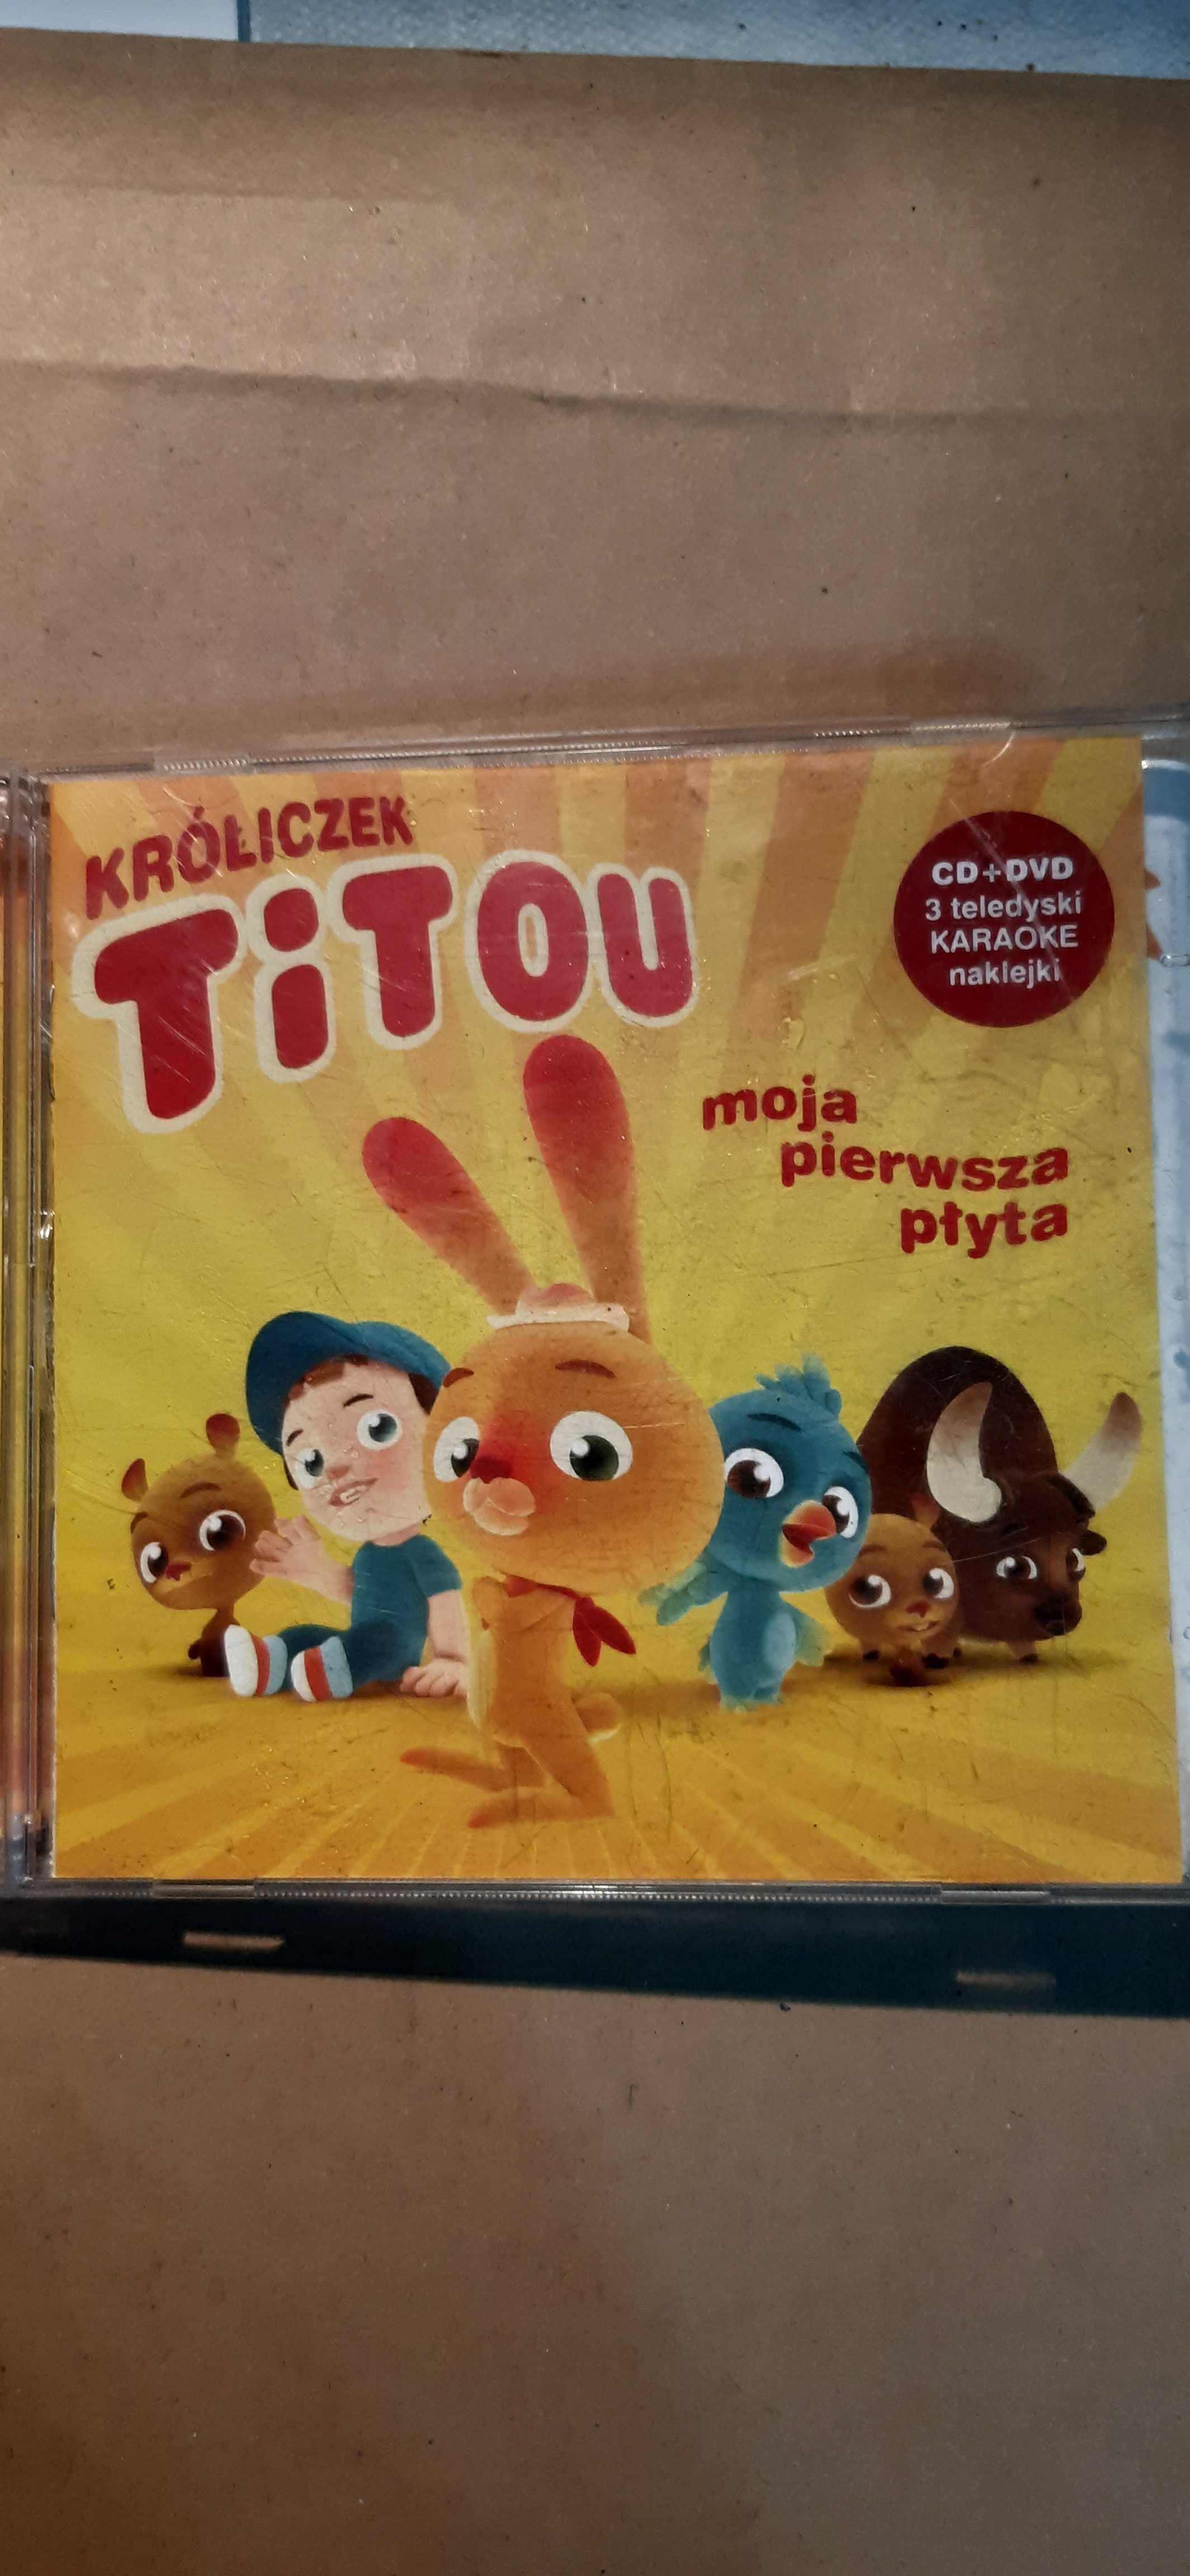 Króliczek Titou MOJA PIERWSZA PŁYTA CD+DVD i maklejki